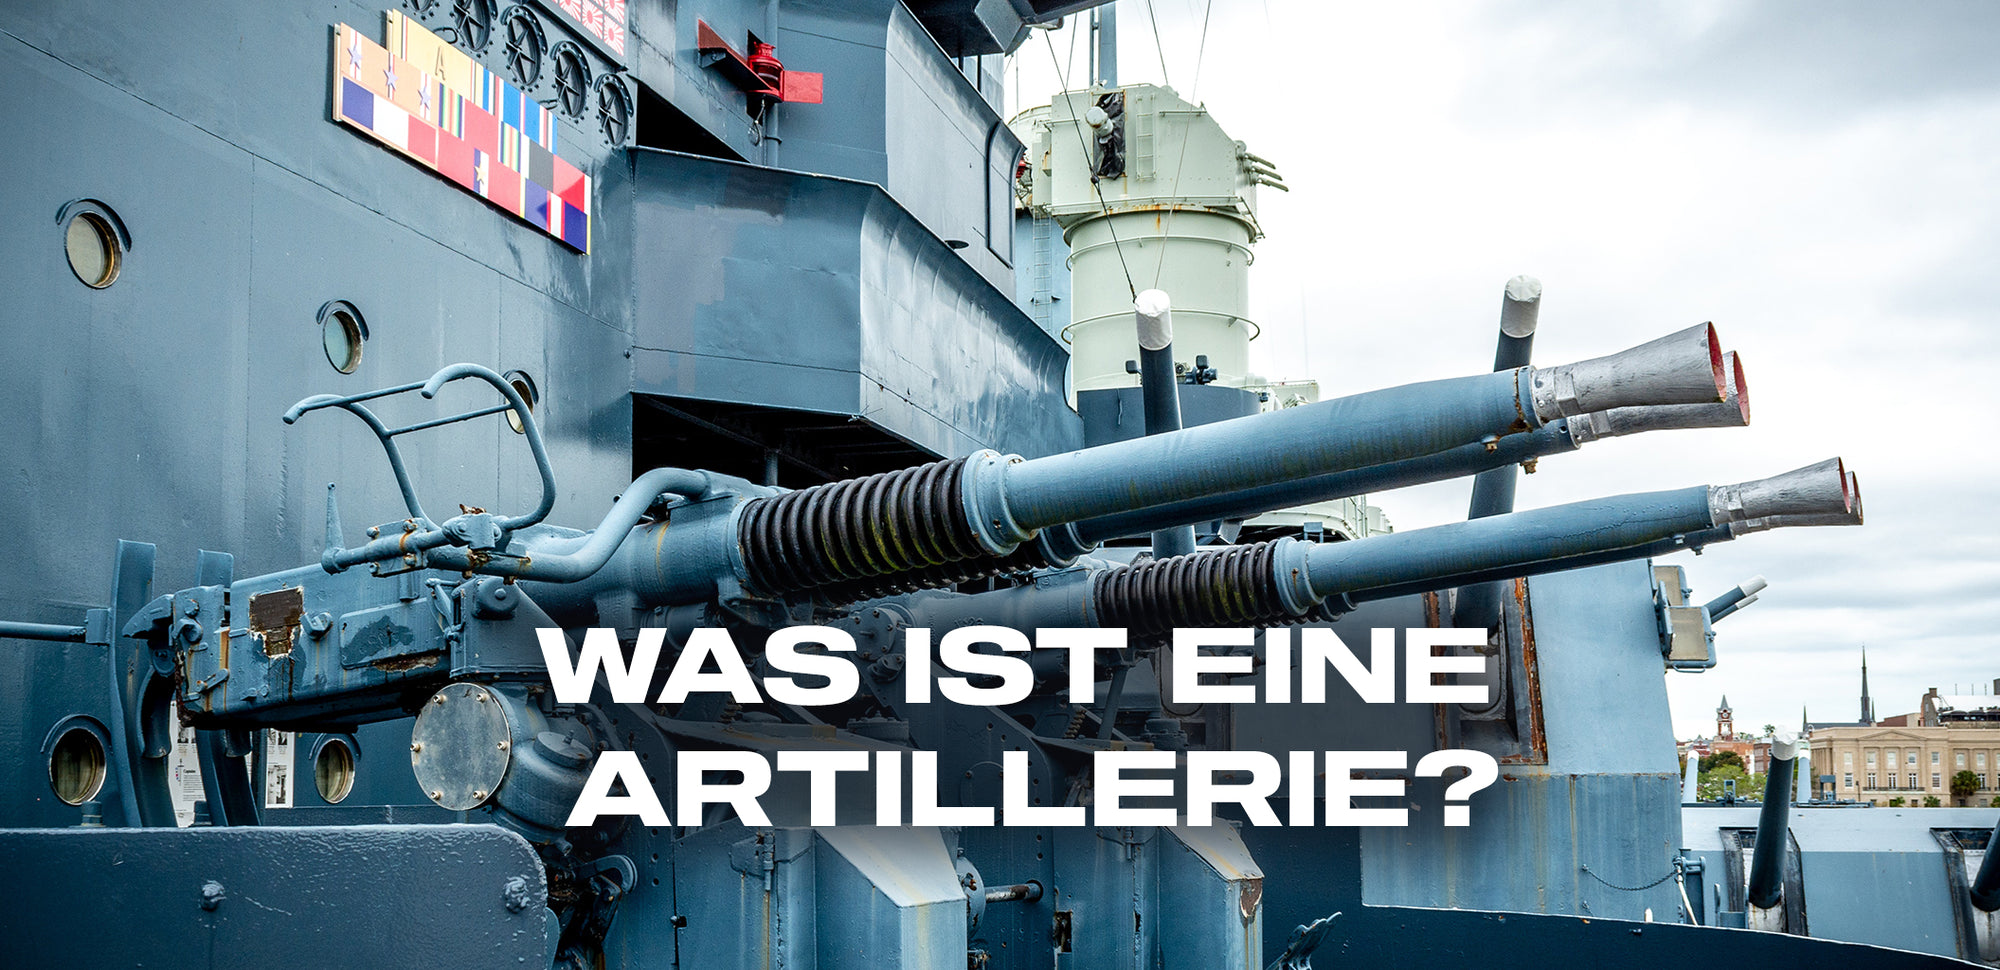 Was ist eine Artillerie?